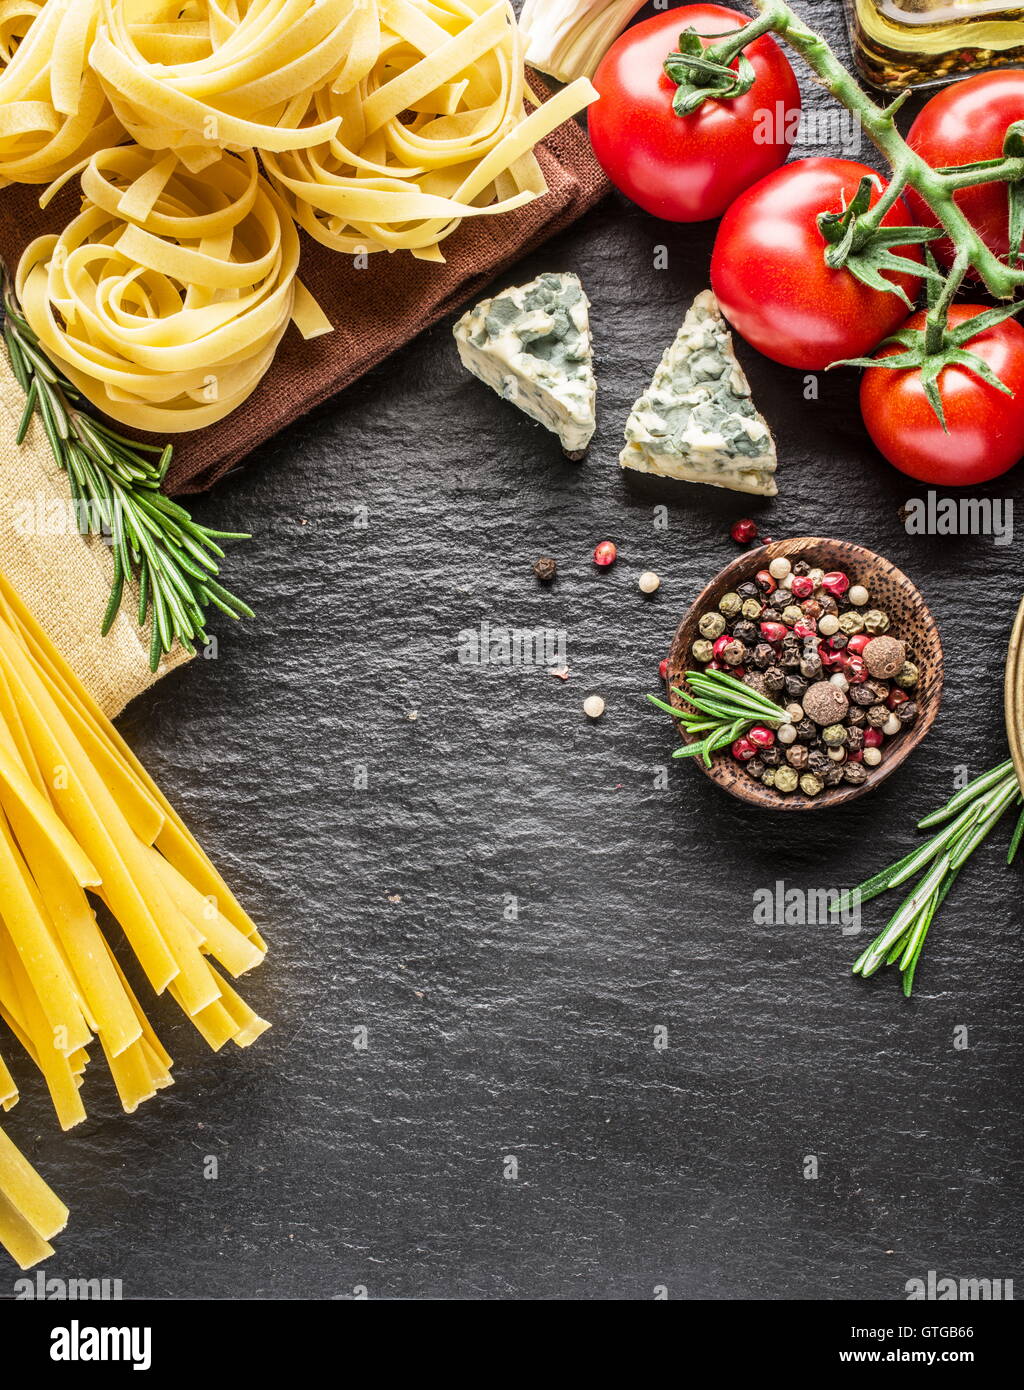 Ingrédients pâtes. Les tomates cerise, les pâtes spaghetti, romarin et d'épices sur une carte de graphite. Banque D'Images